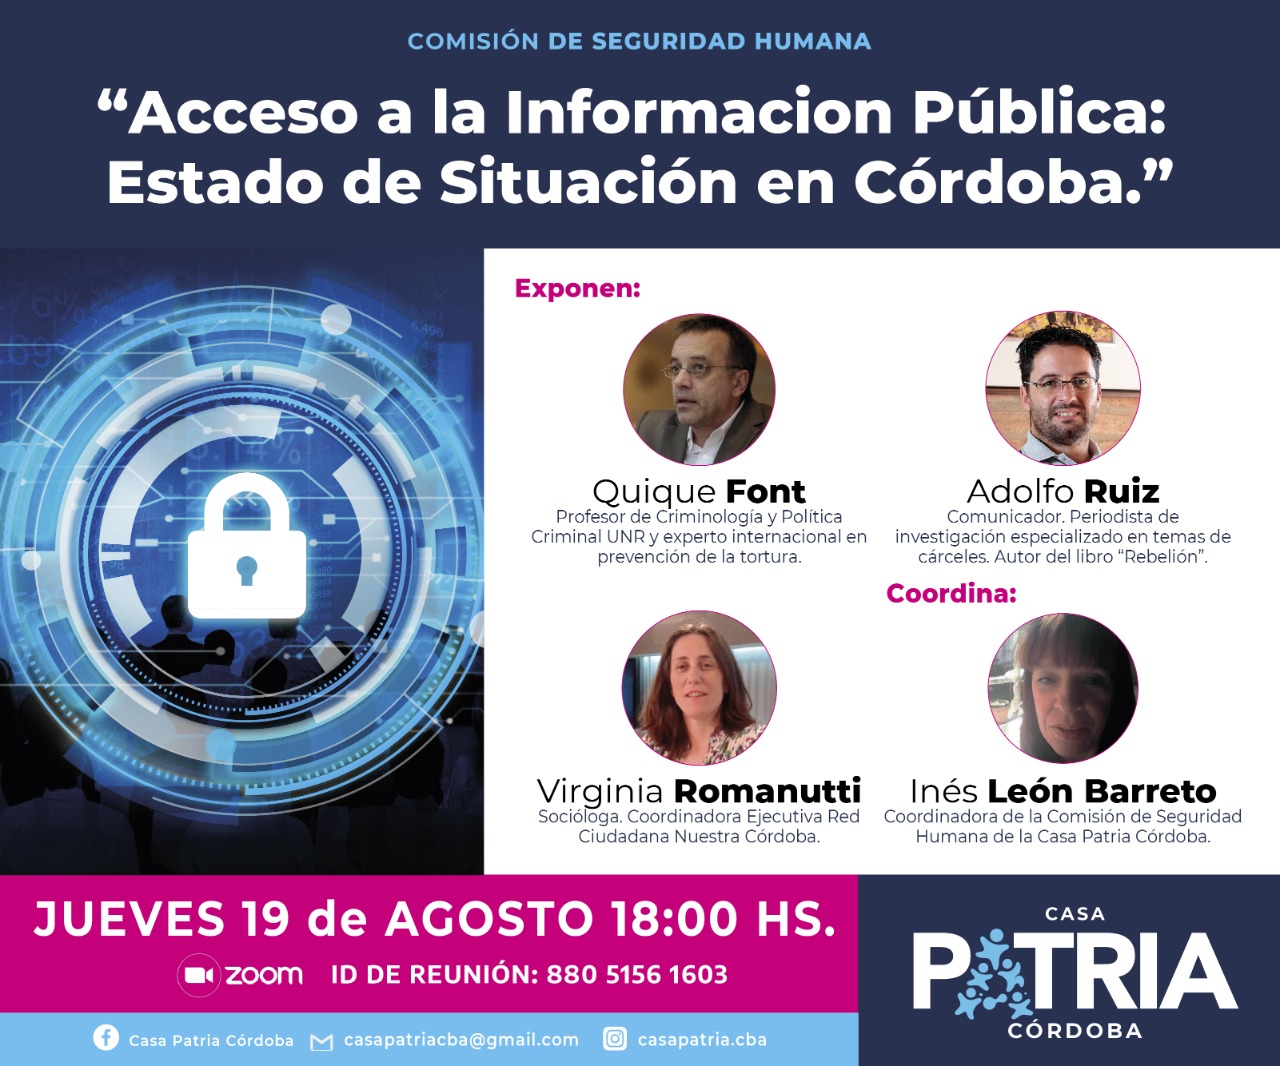 Acceso a la Información Pública: Estado de Situación en Córdoba